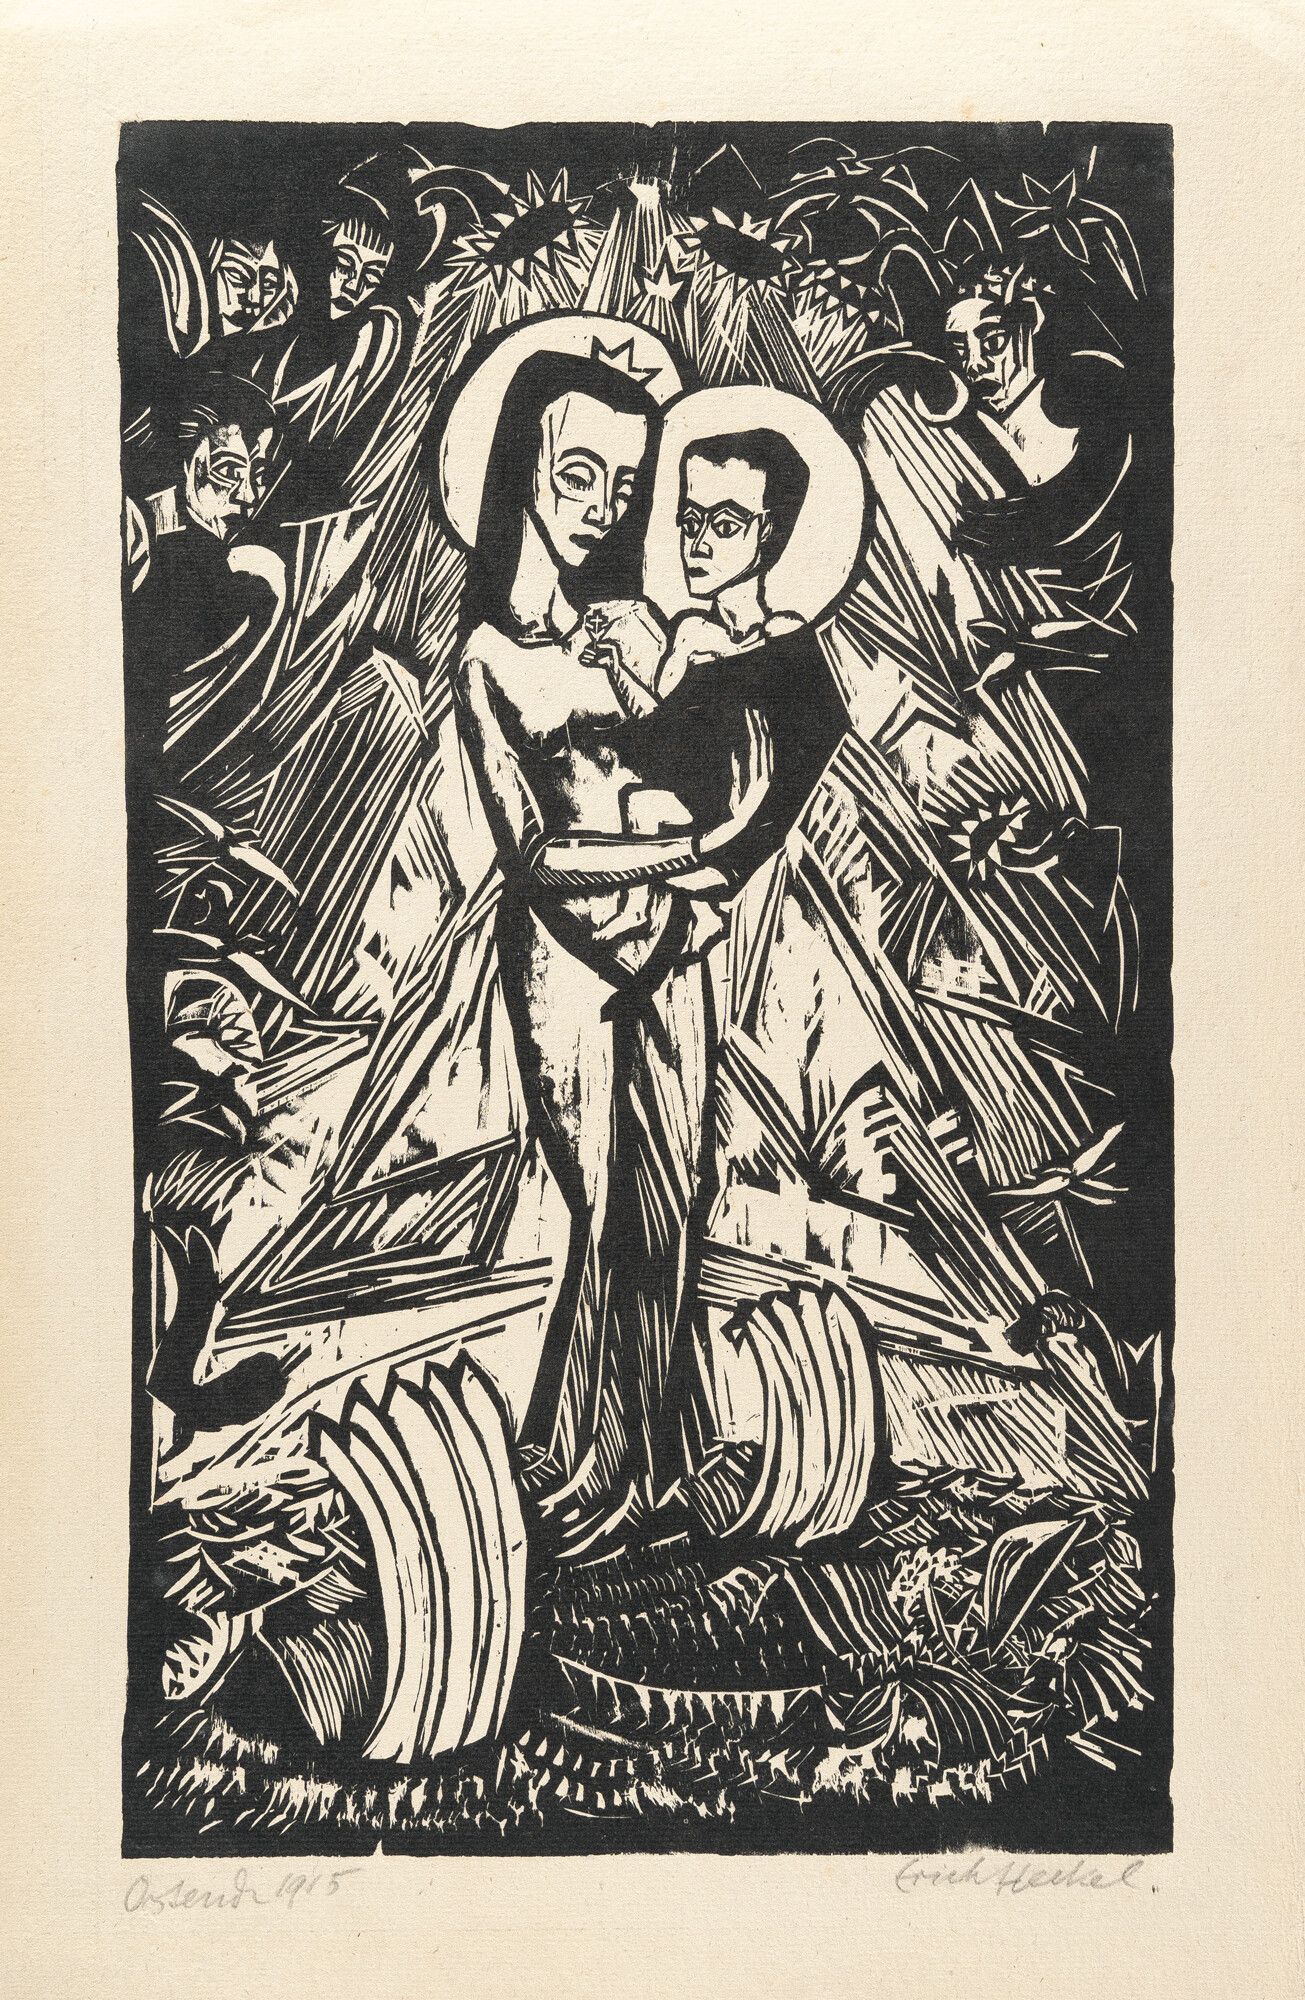 Erich Heckel Art for Sale: Prints & Originals | MyArtBroker